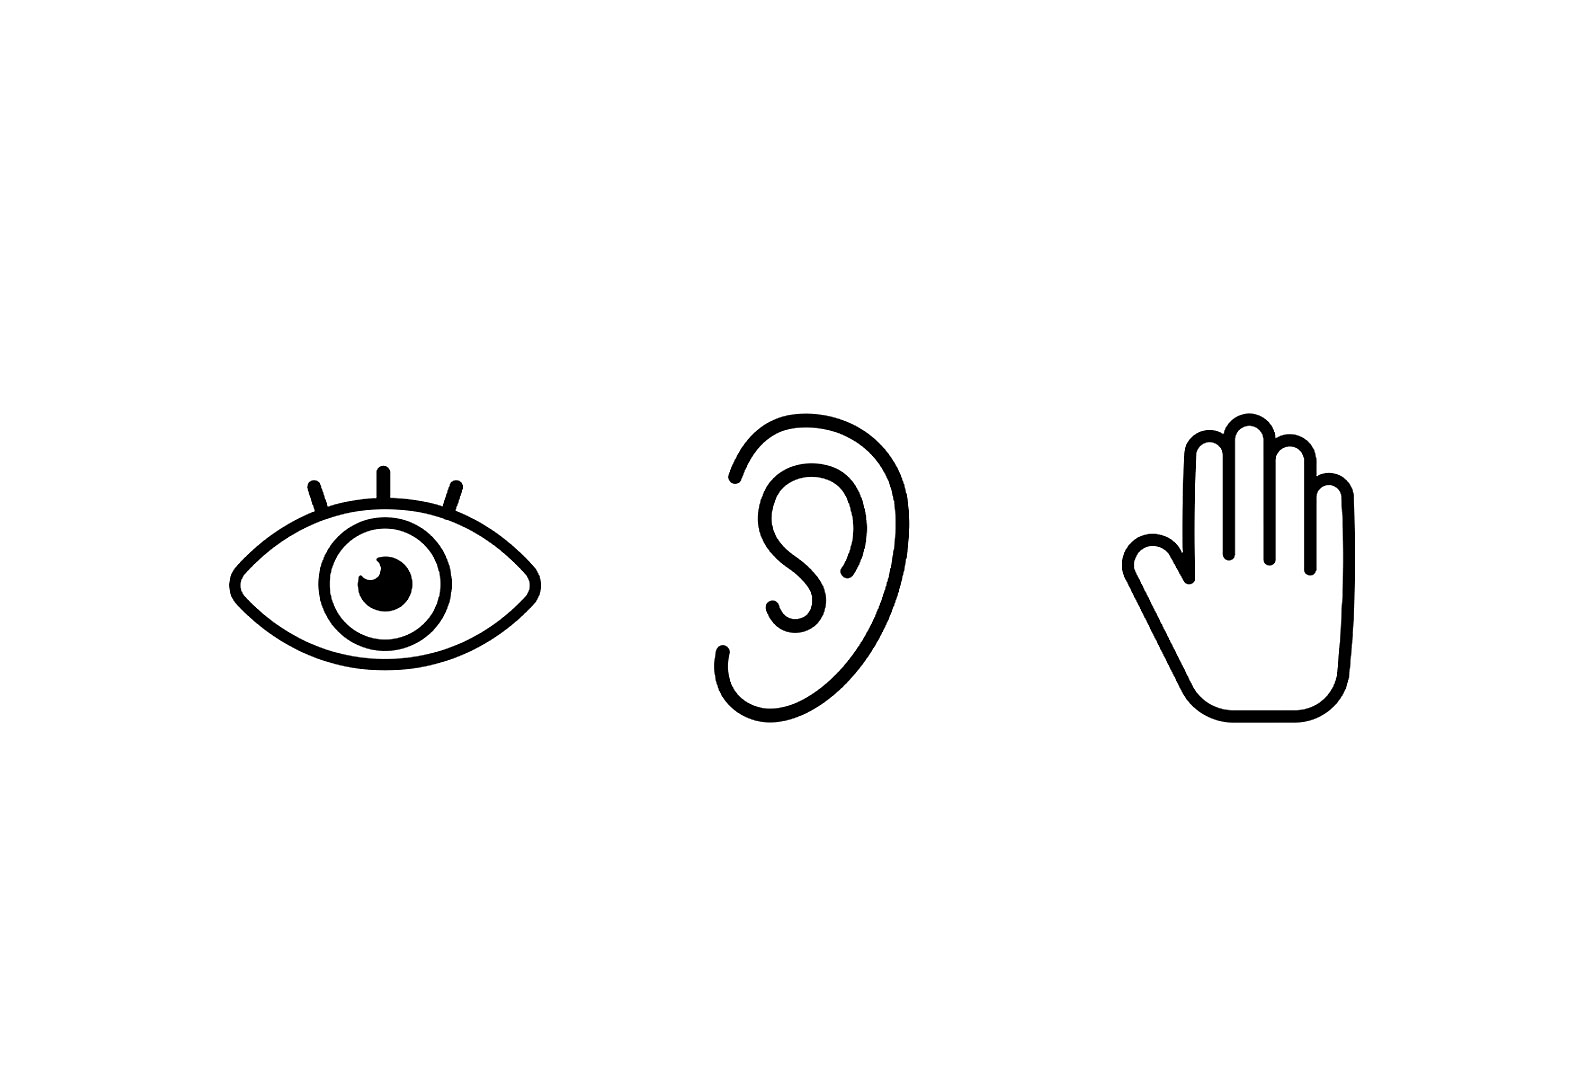 Drie pictogrammen naast elkaar: links een oog, in het midden een oor en rechts een hand